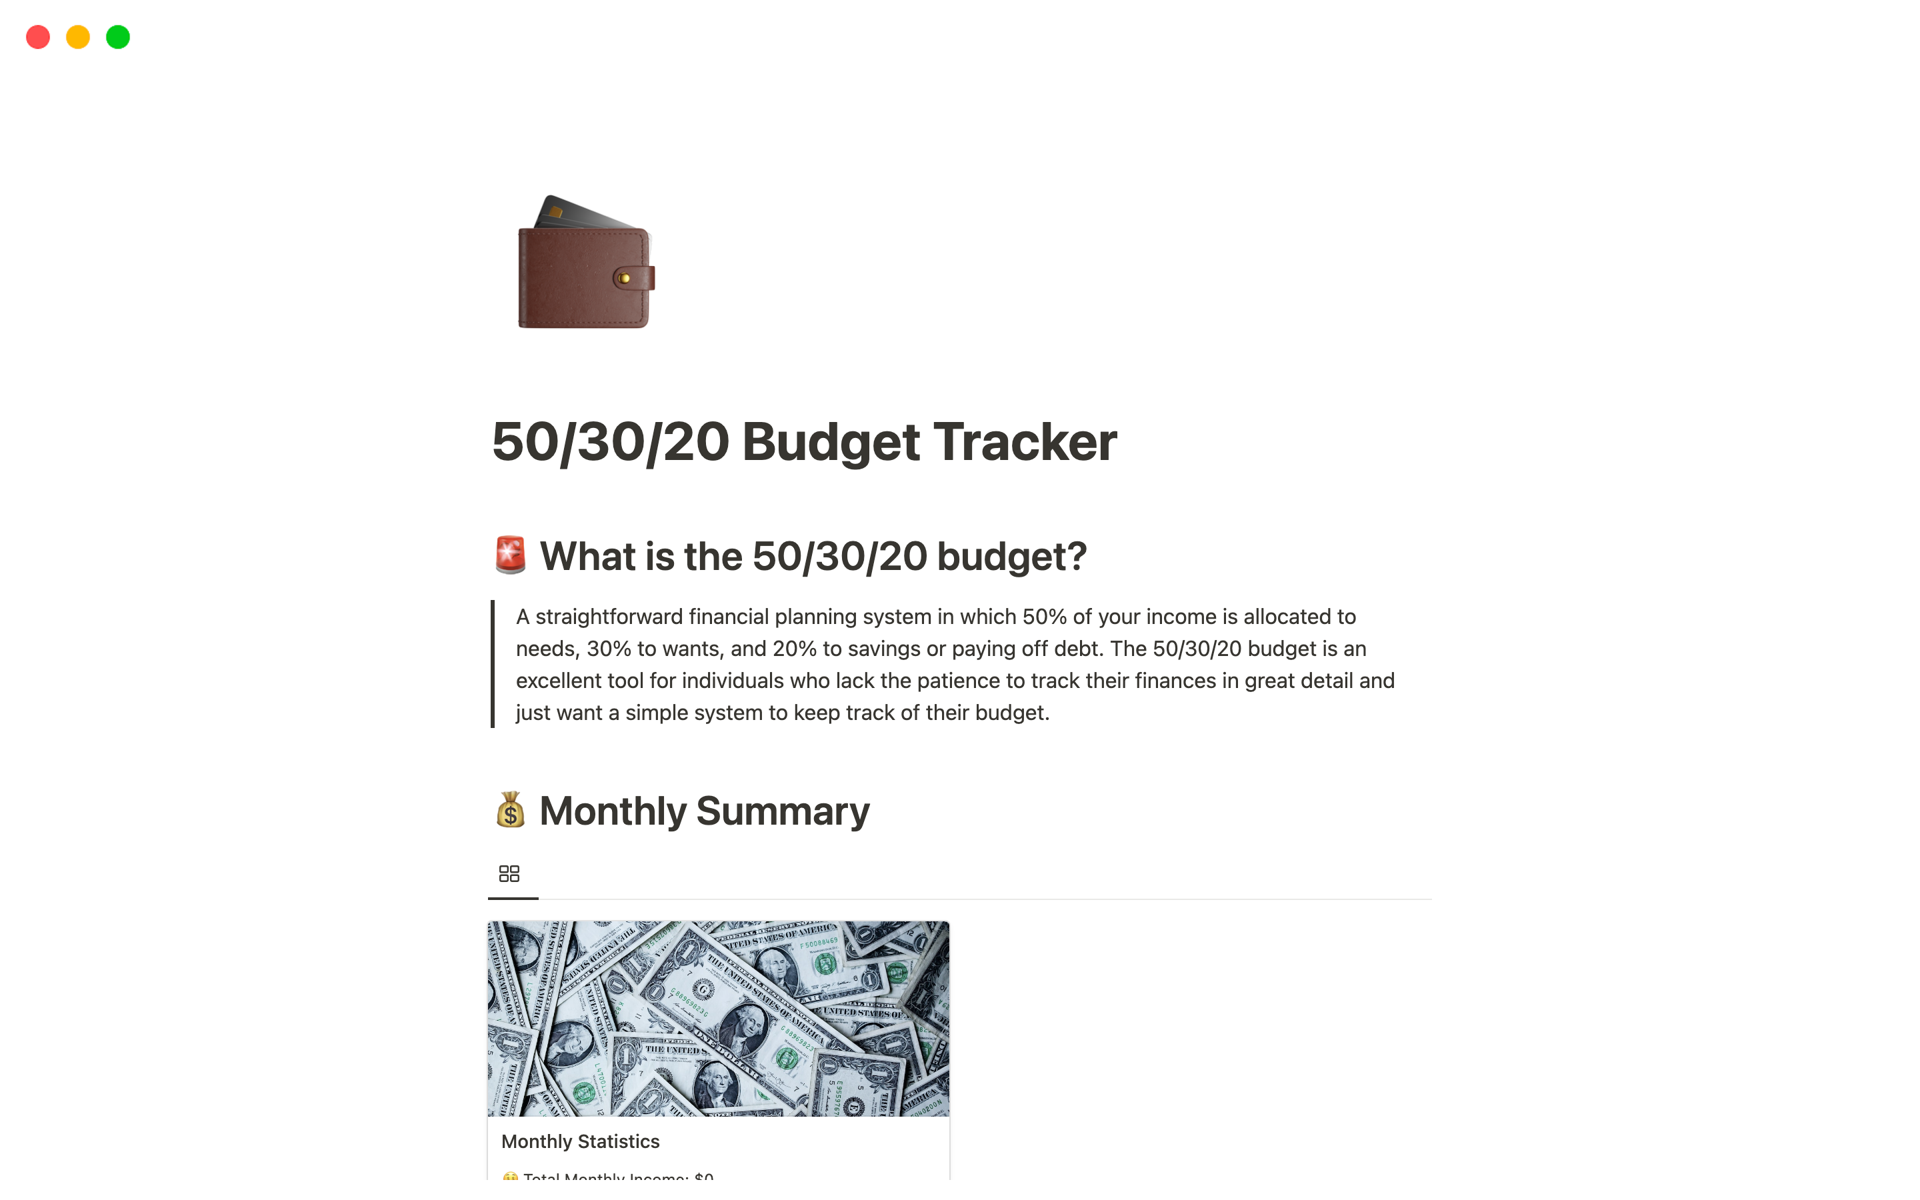 Uma prévia do modelo para 50/30/20 budget tracker